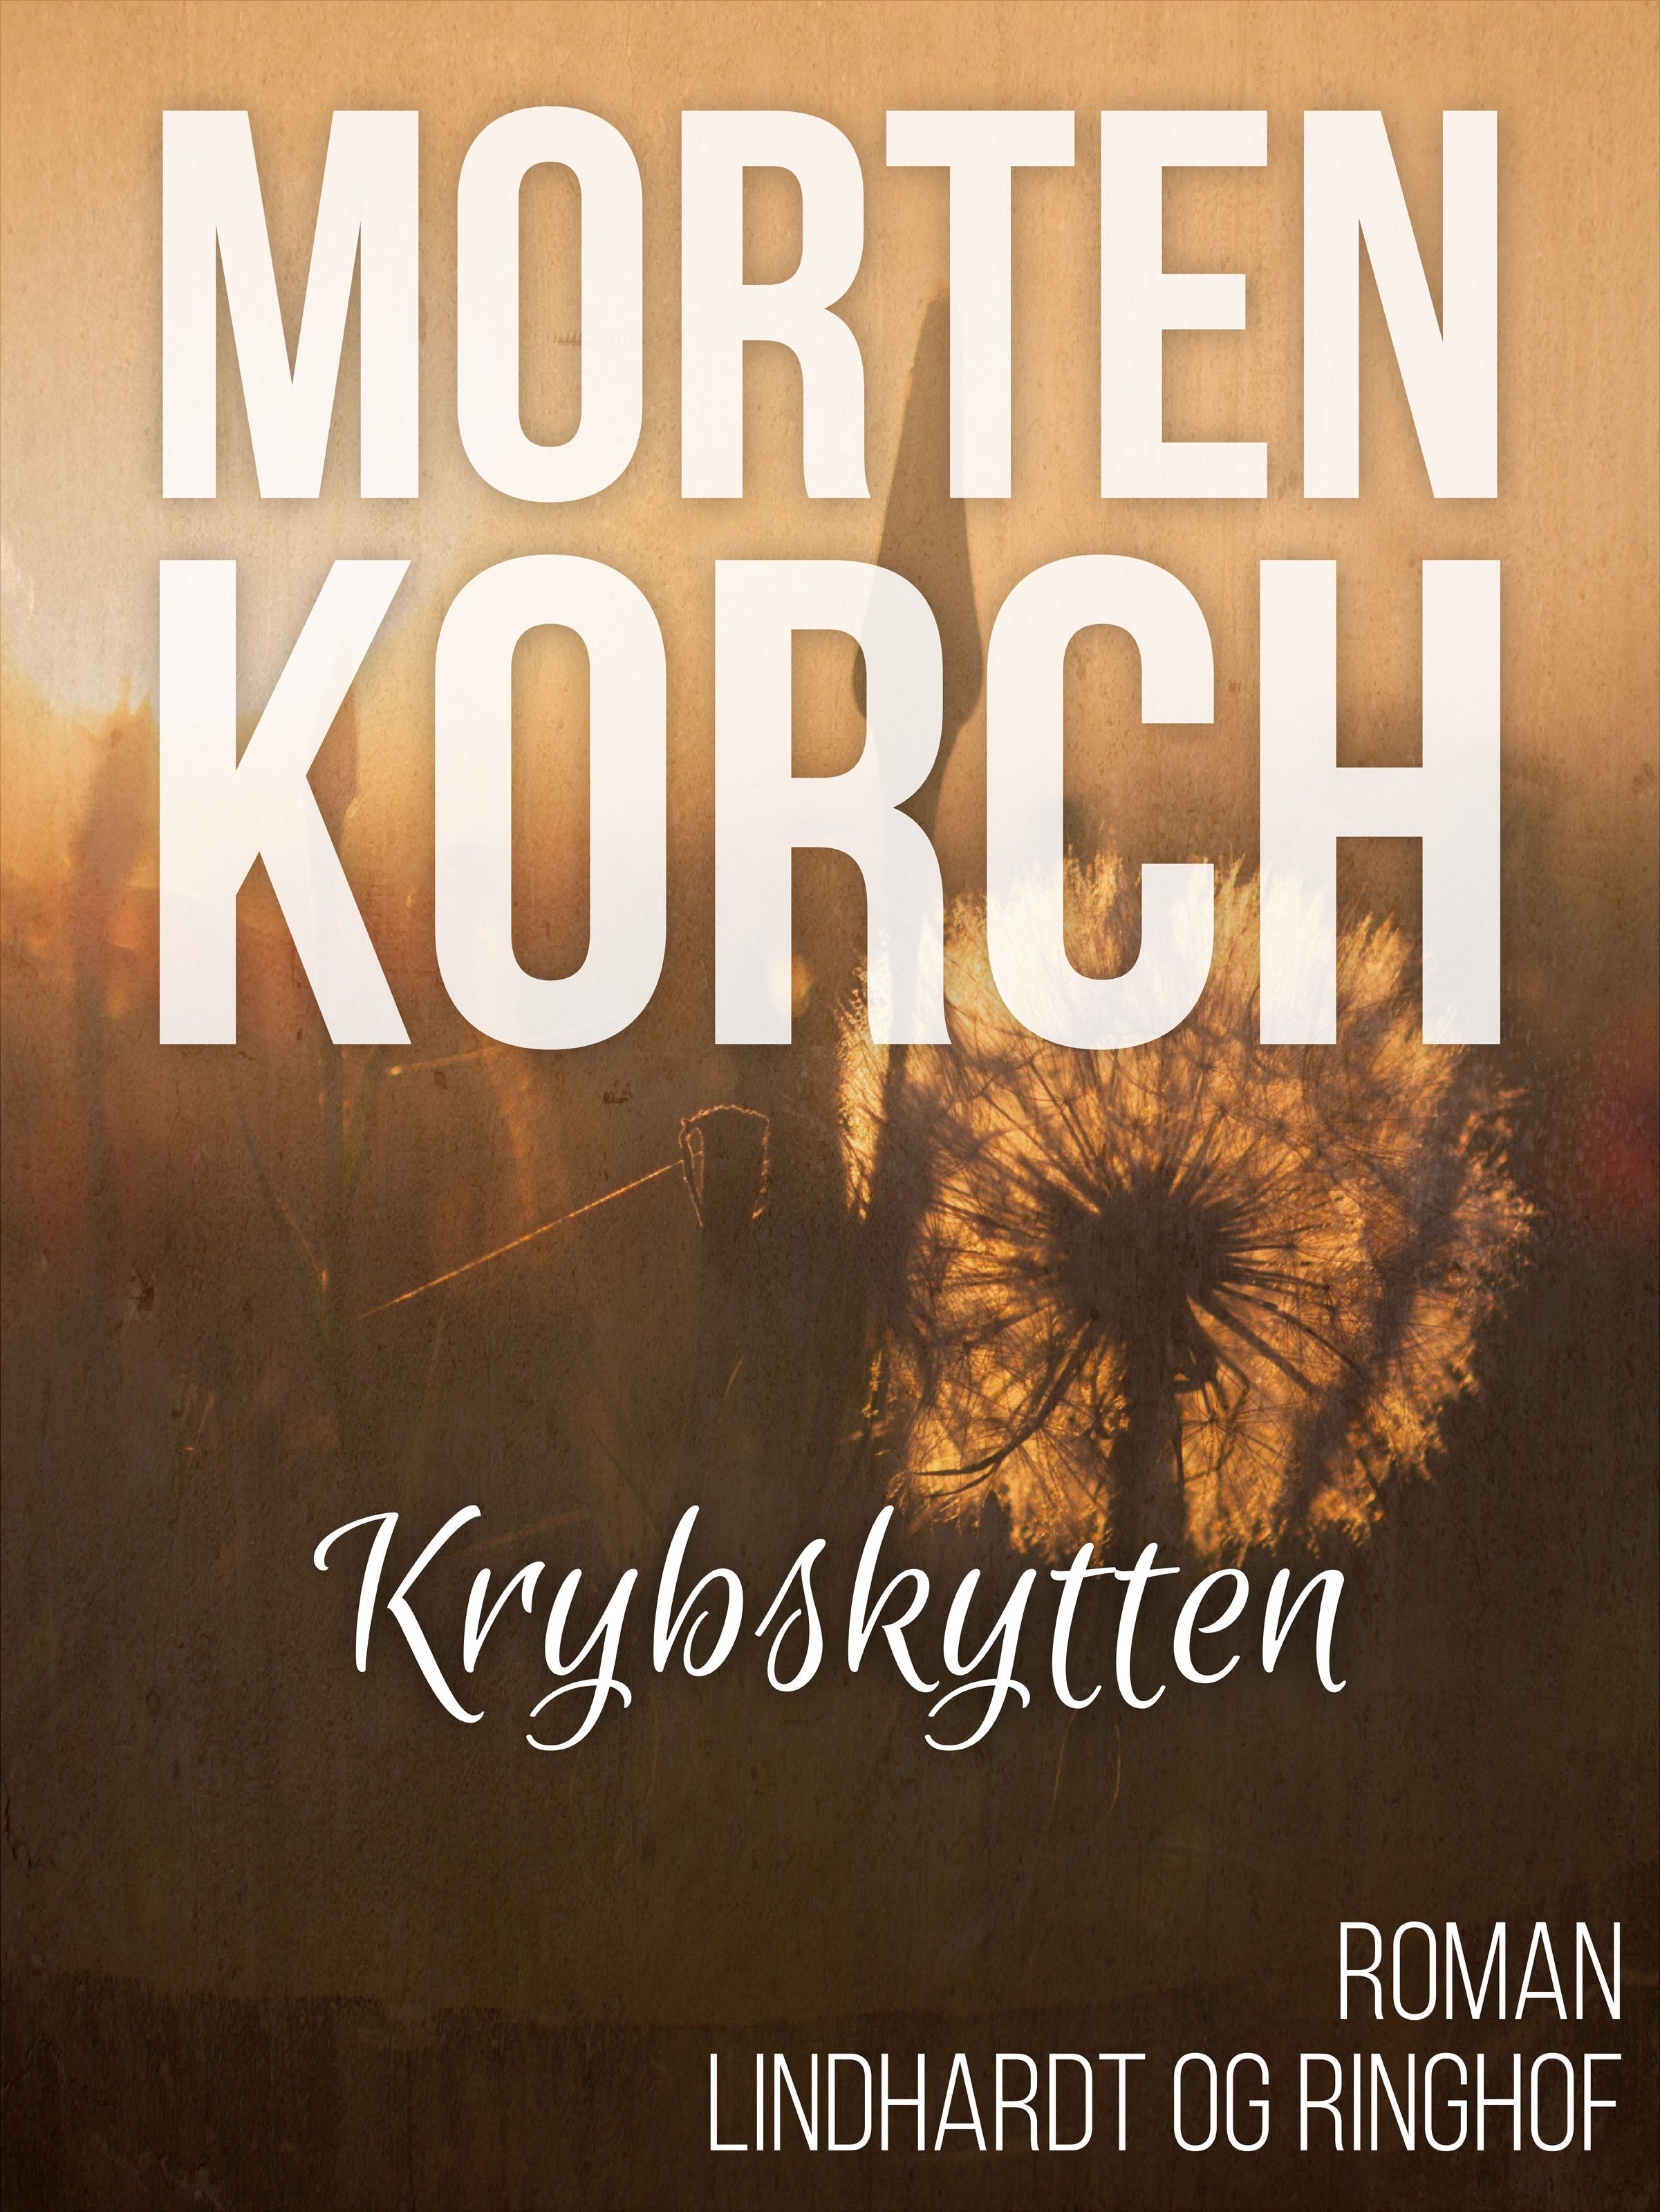 Krybskytten, ljudbok av Morten Korch